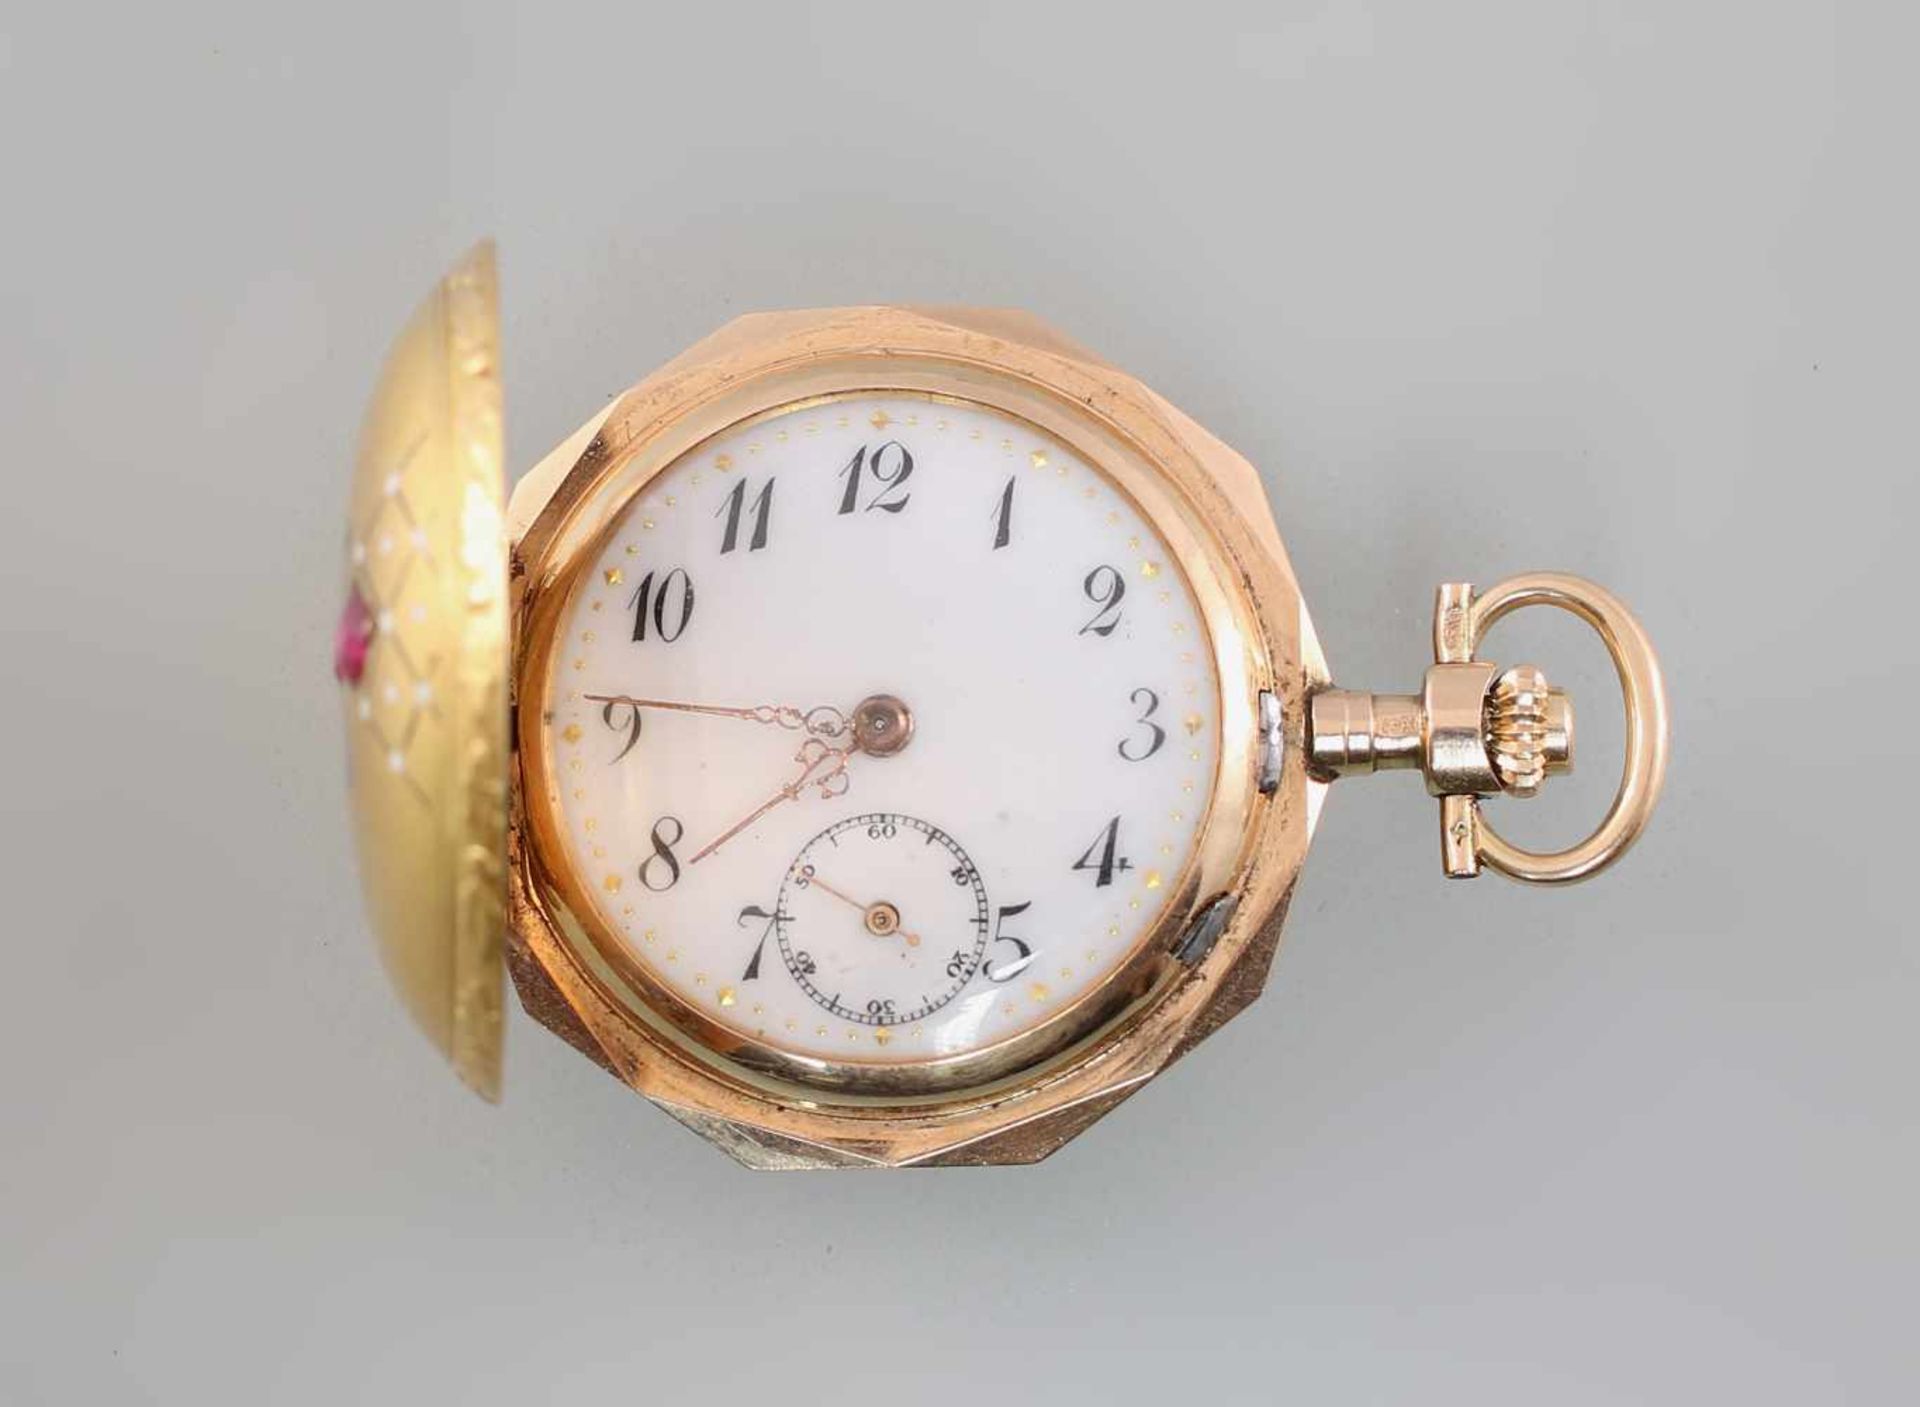 Goldene Savonette Damentaschenuhr Spätbiedermeierum 1880, 585er Gold, alle 3 Deckel gepunzt 14K - Bild 2 aus 5